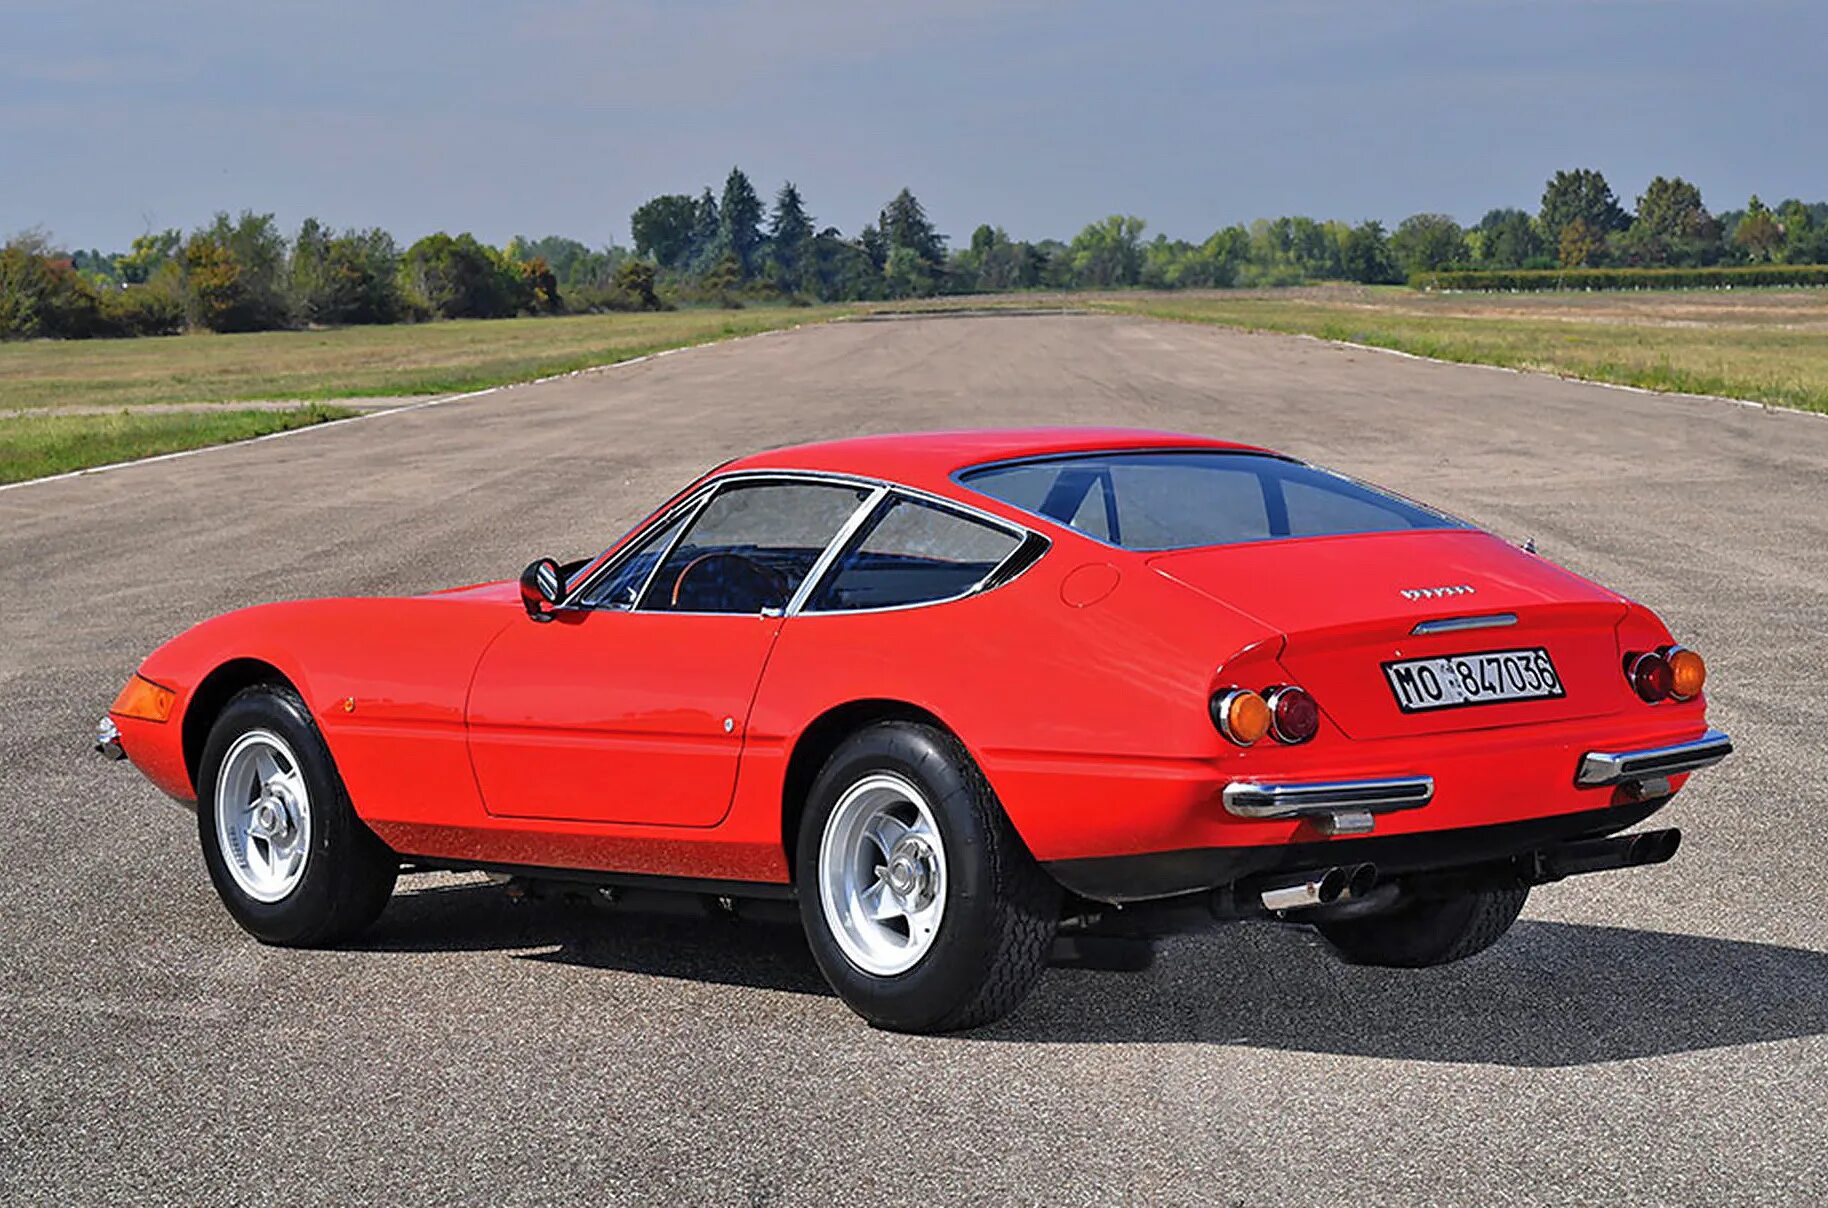 Ferrari 365. Ferrari 365 GTB/4. Ferrari 365 GTB/4 Daytona. Ferrari 365gtb4 Daytona 1969. Ferrari 365 GTB/4 1973.